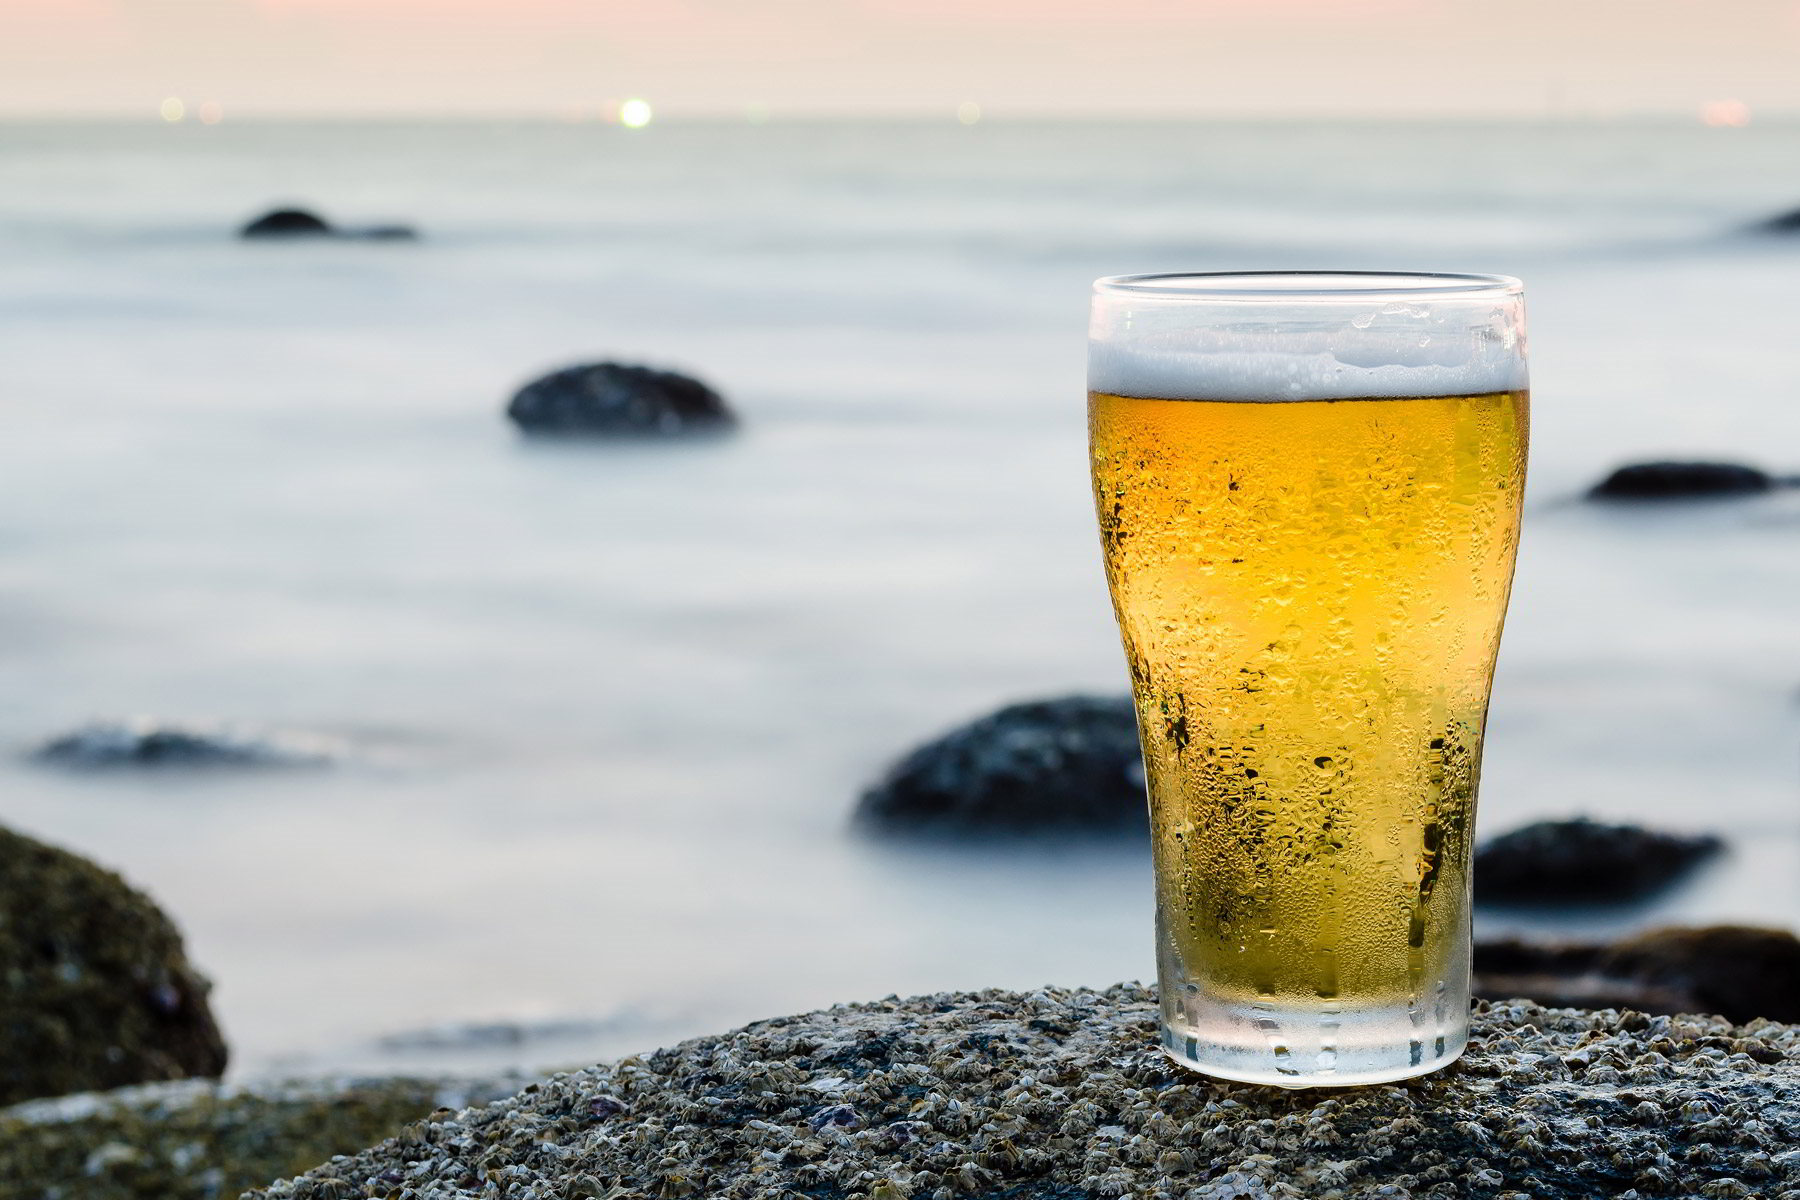 ΒΟΜΒΑ: Πασιγνωστη μπύρα ανακαλεί εσπευσμένα χιλιάδες μπουκάλια!